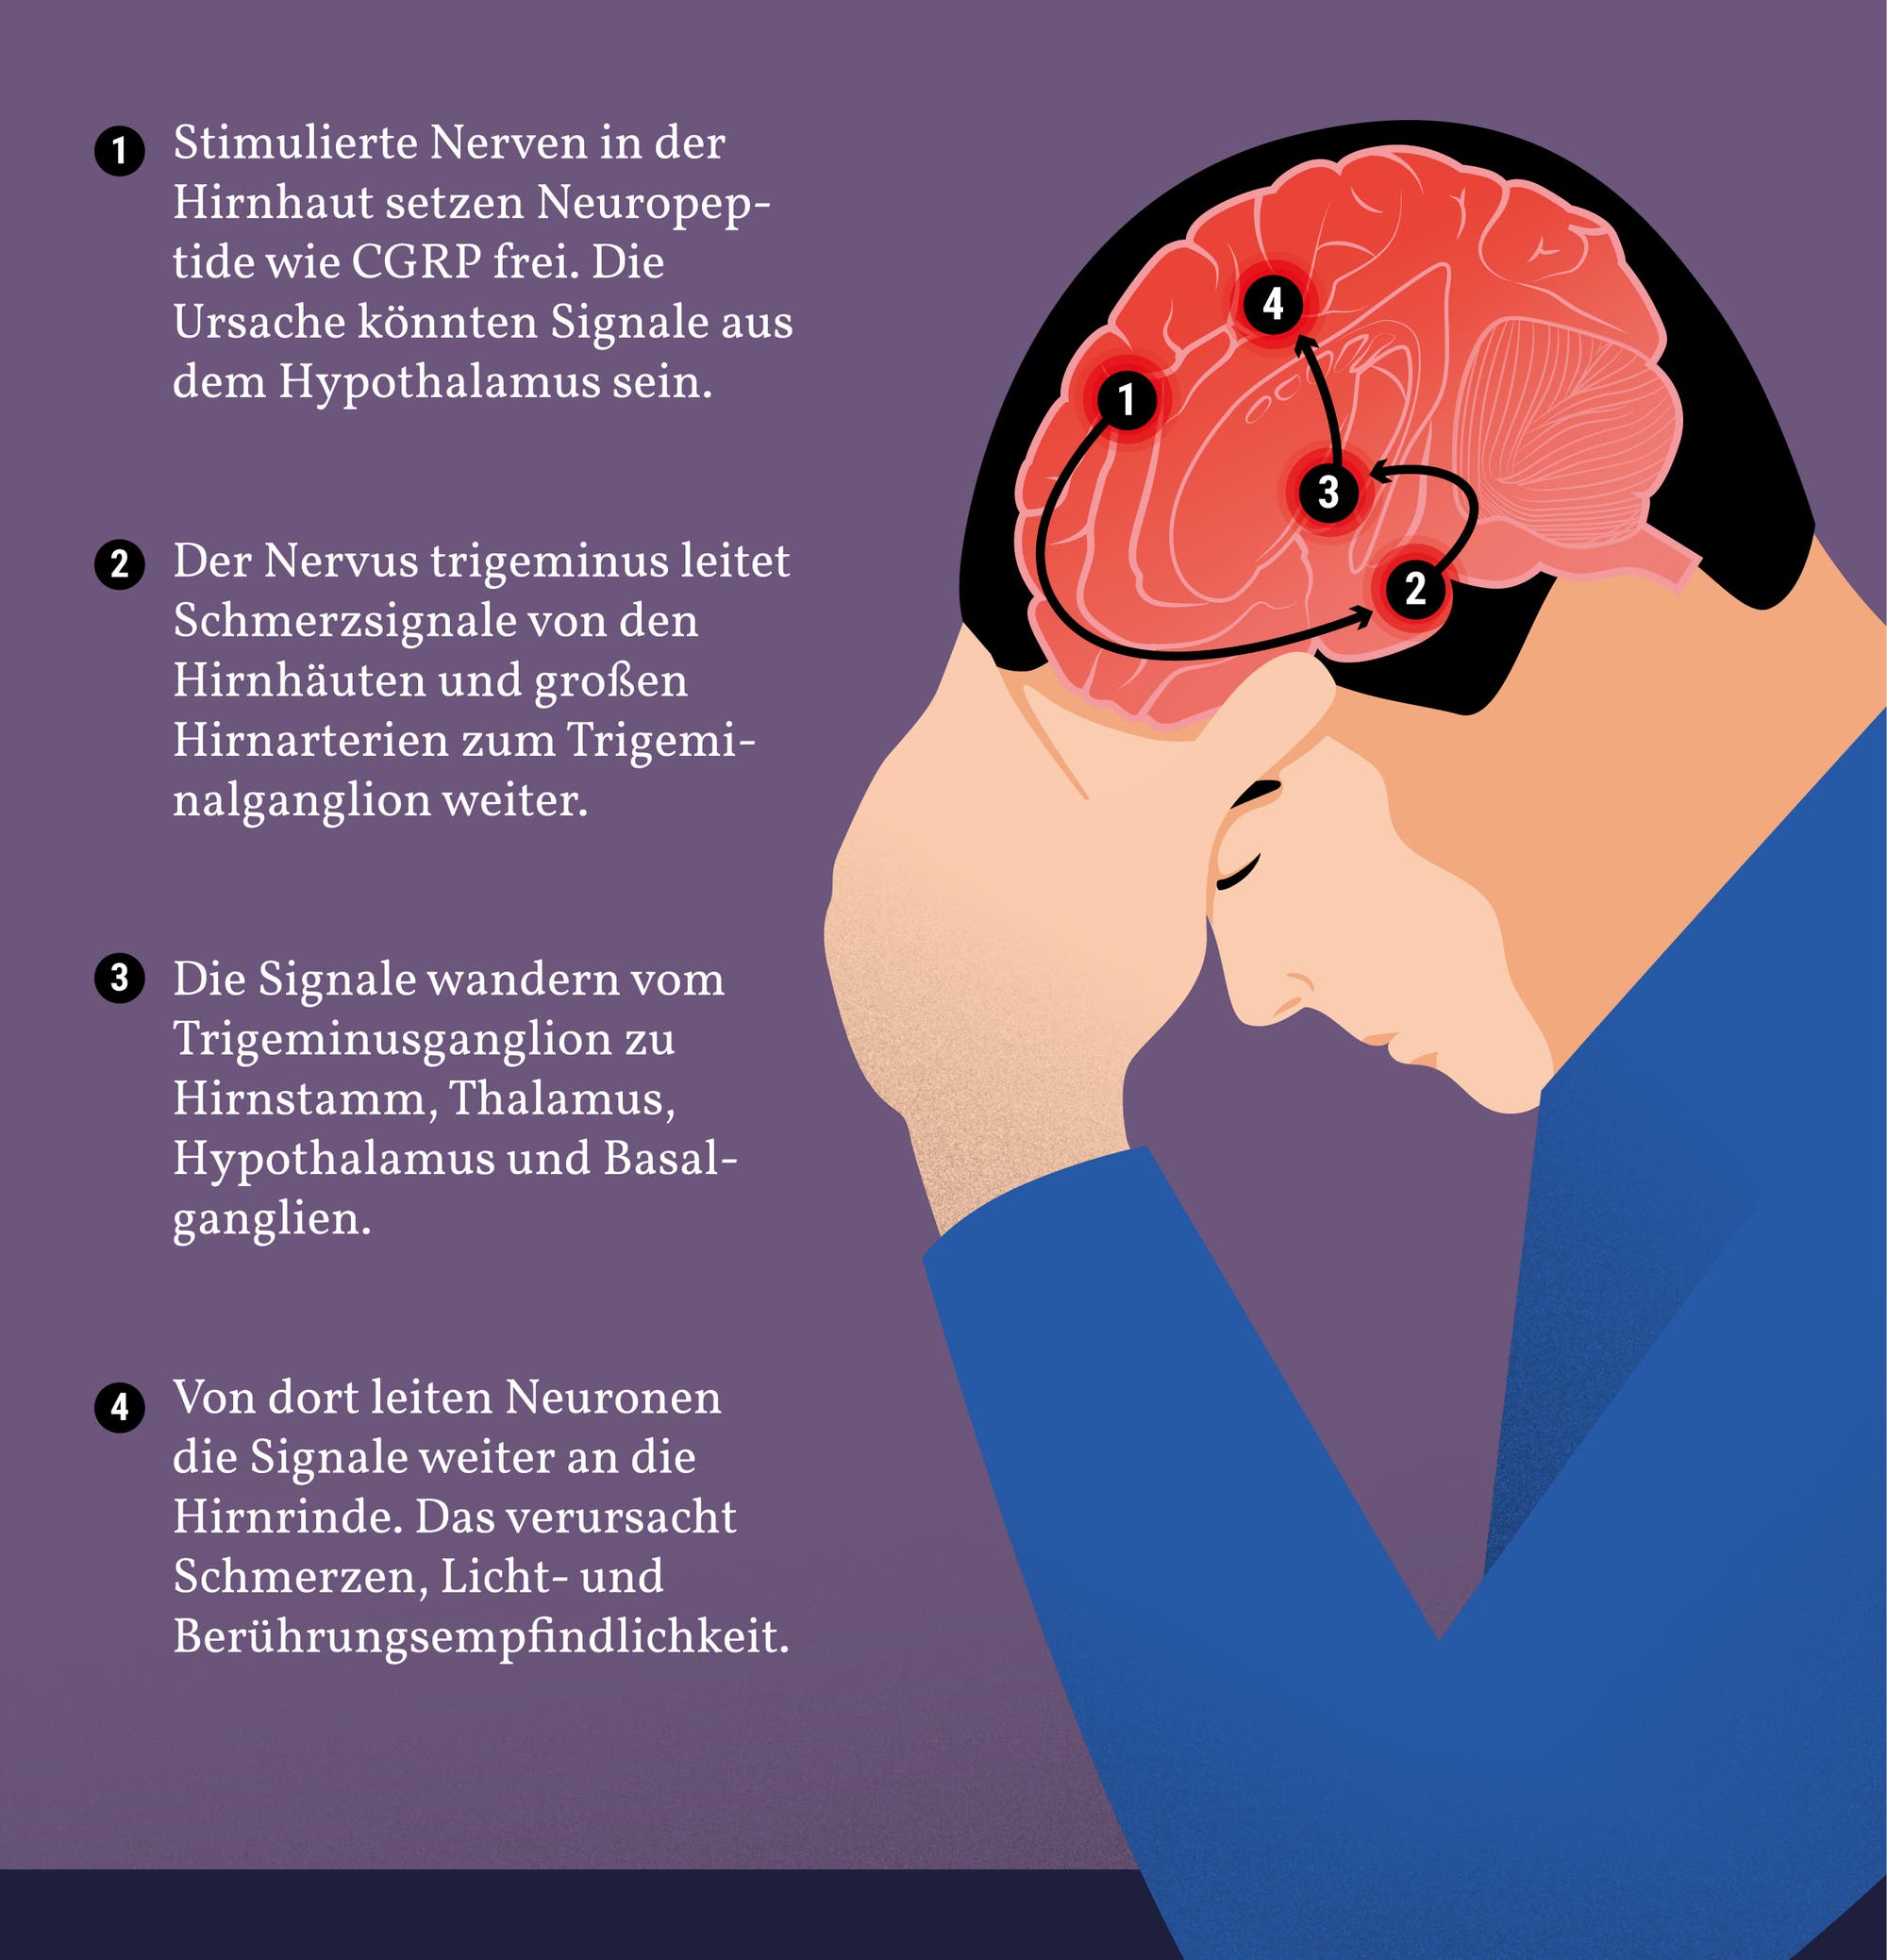 Die führende Theorie zu Migränekopfschmerzen: Der Hypothalamus stimuliert die Nerven, die mit den Blutgefäßen im Kopf verbunden sind, wie die Grafik zeigt.